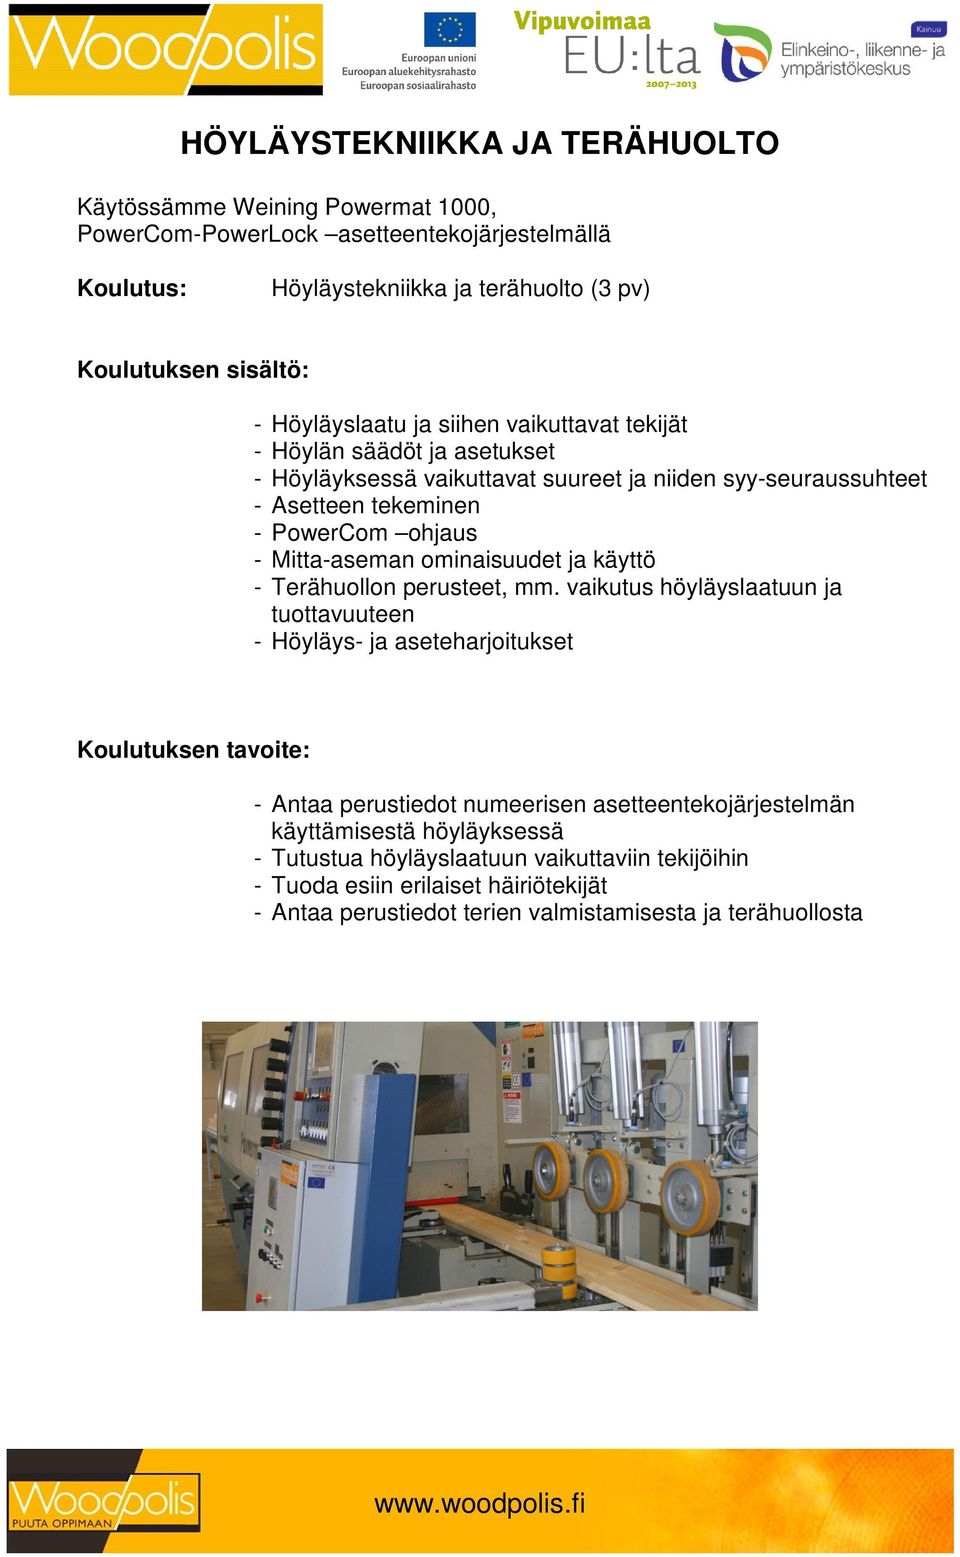 Mitta-aseman ominaisuudet ja käyttö - Terähuollon perusteet, mm.